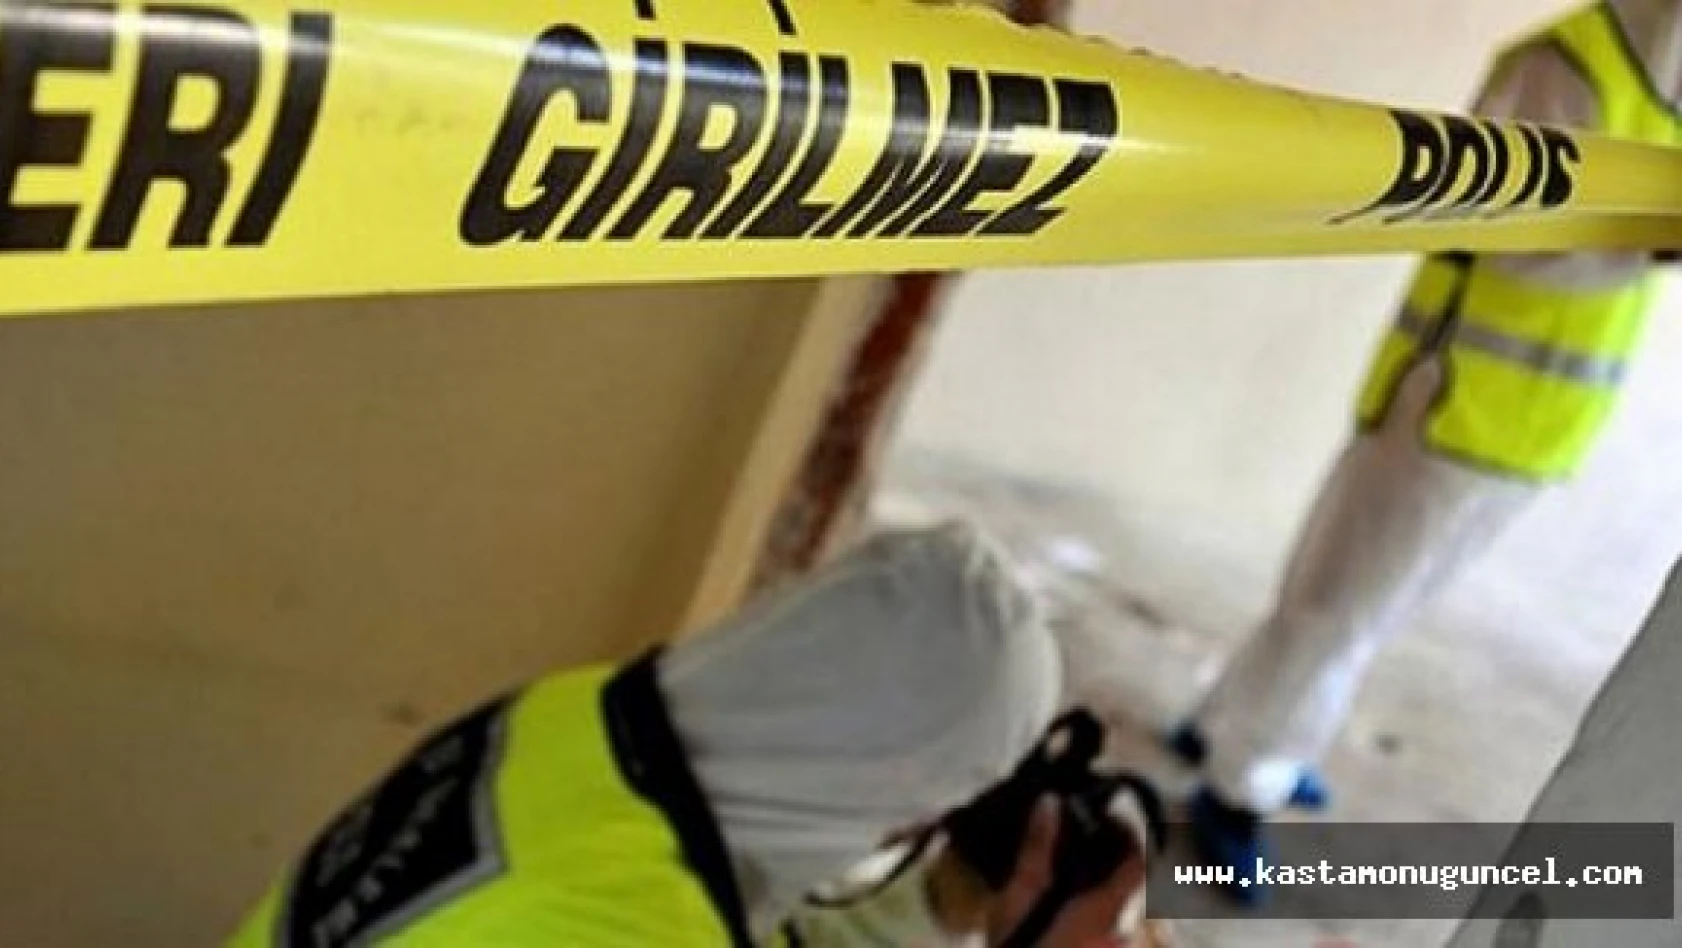 Kastamonu'da 2 kişi ölü bulundu